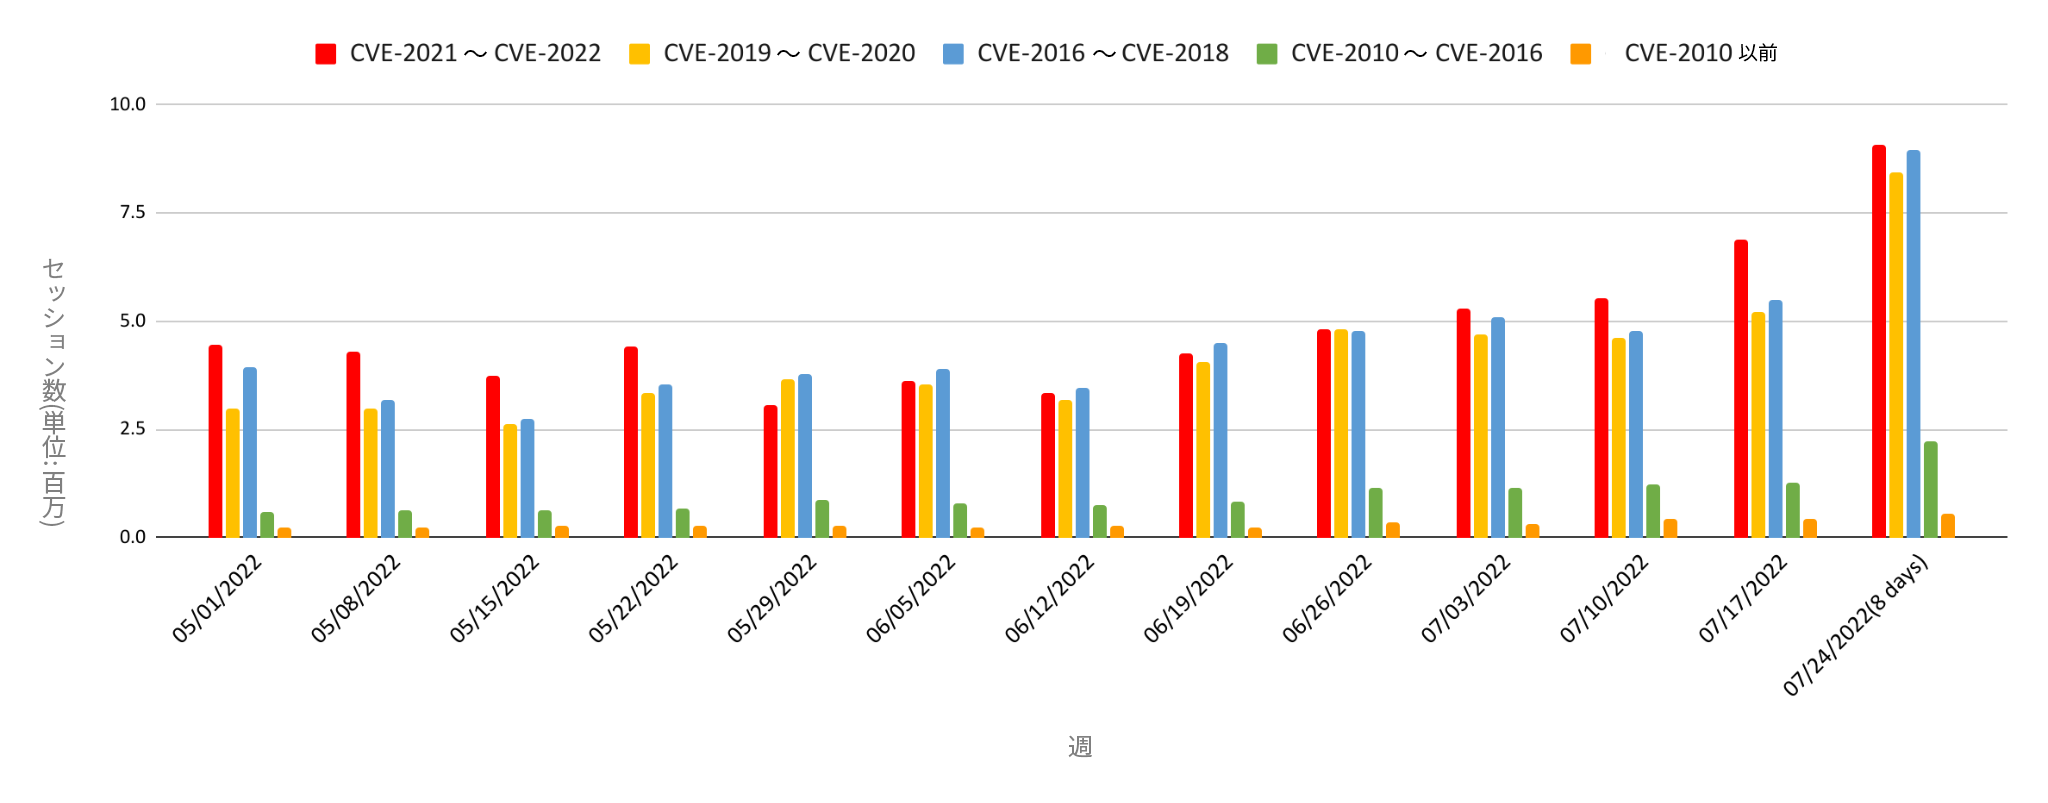 観測された攻撃に関するネットワークセキュリティ動向を悪用されたCVEの開示された年別で分類したもの。赤＝2021-2022年公開のCVE、黄＝2019-2020年公開のCVE、青＝2016-2018年公開のCVE、緑＝2010-2015年公開のCVE、オレンジ＝2010年より前に公開されたCVE。この棒グラフは、2022年5月から7月の週ごと(単位:百万)の攻撃セッションの深刻度分布を示しています。 